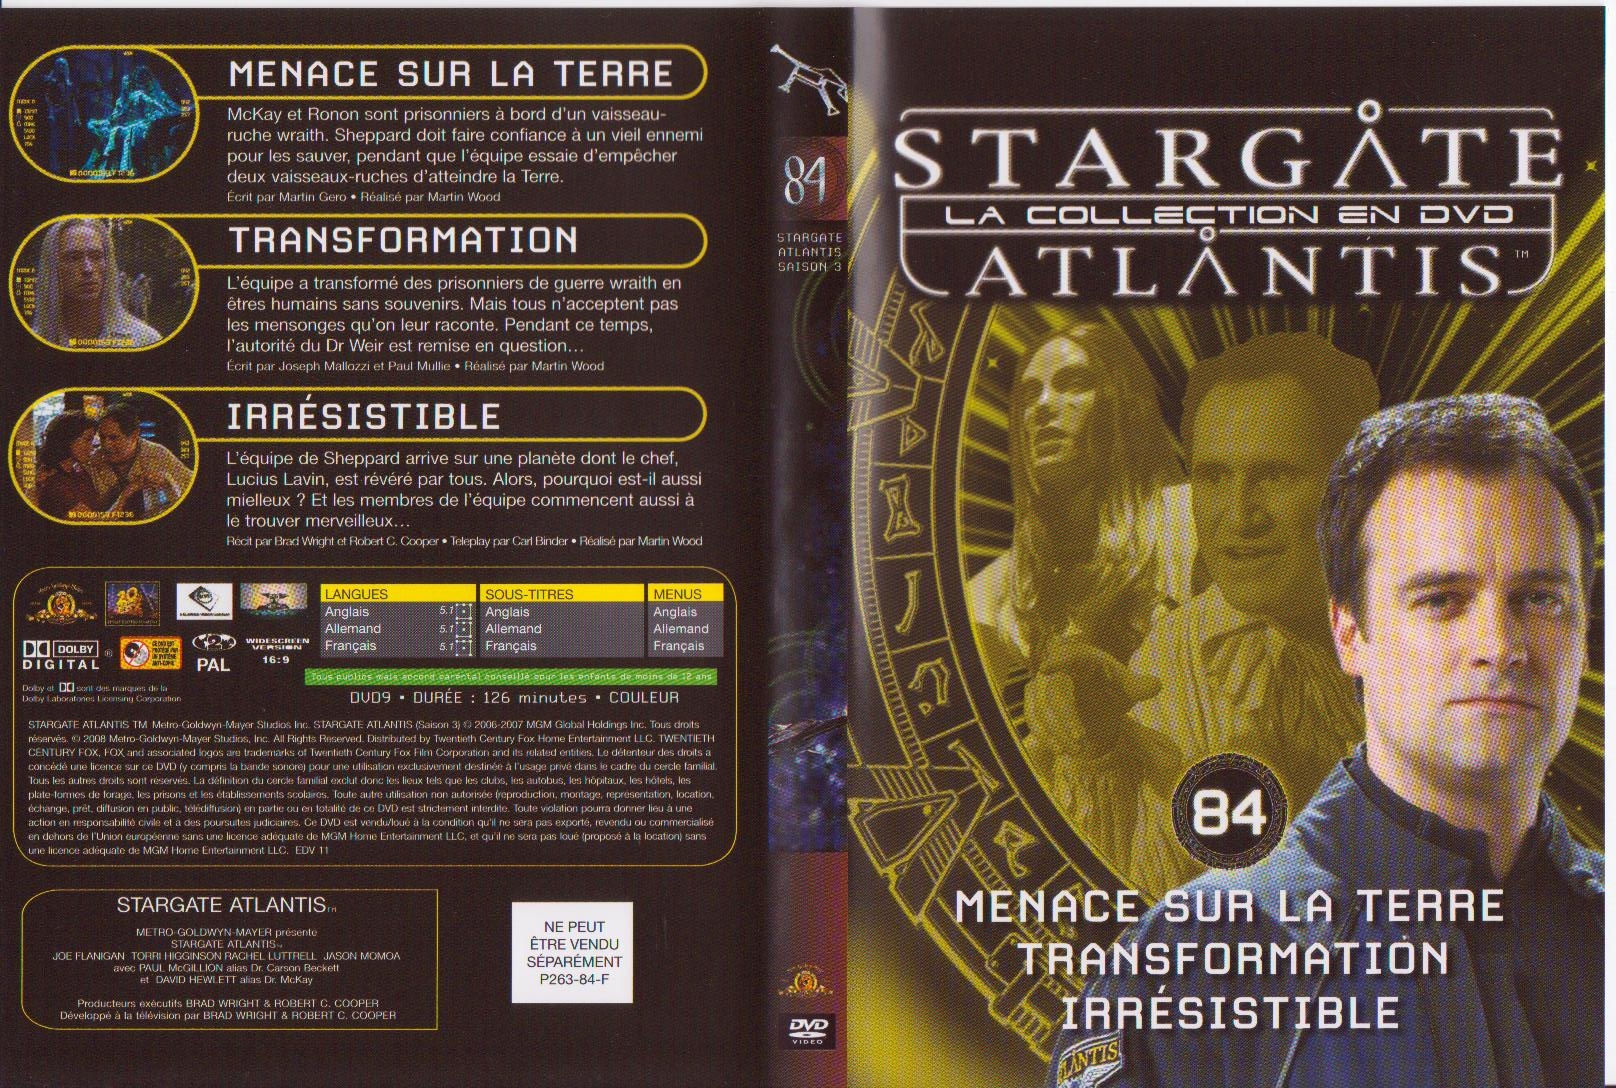 Jaquette DVD Stargate atlantis saison 3 vol 84